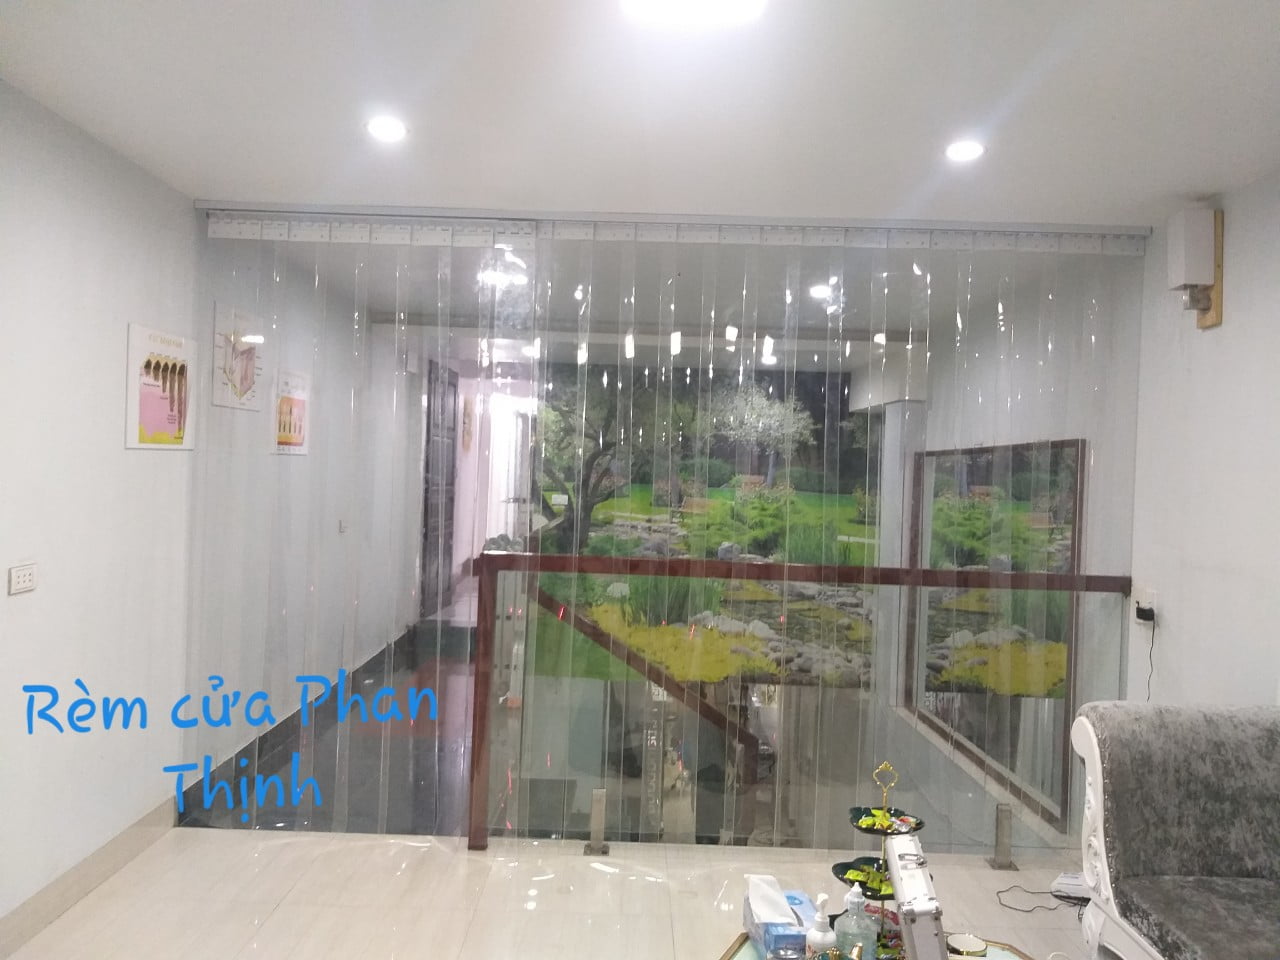 Thi công rèm ngăn lạnh PVC tại Spa ở Hạ Long, Quảng Ninh